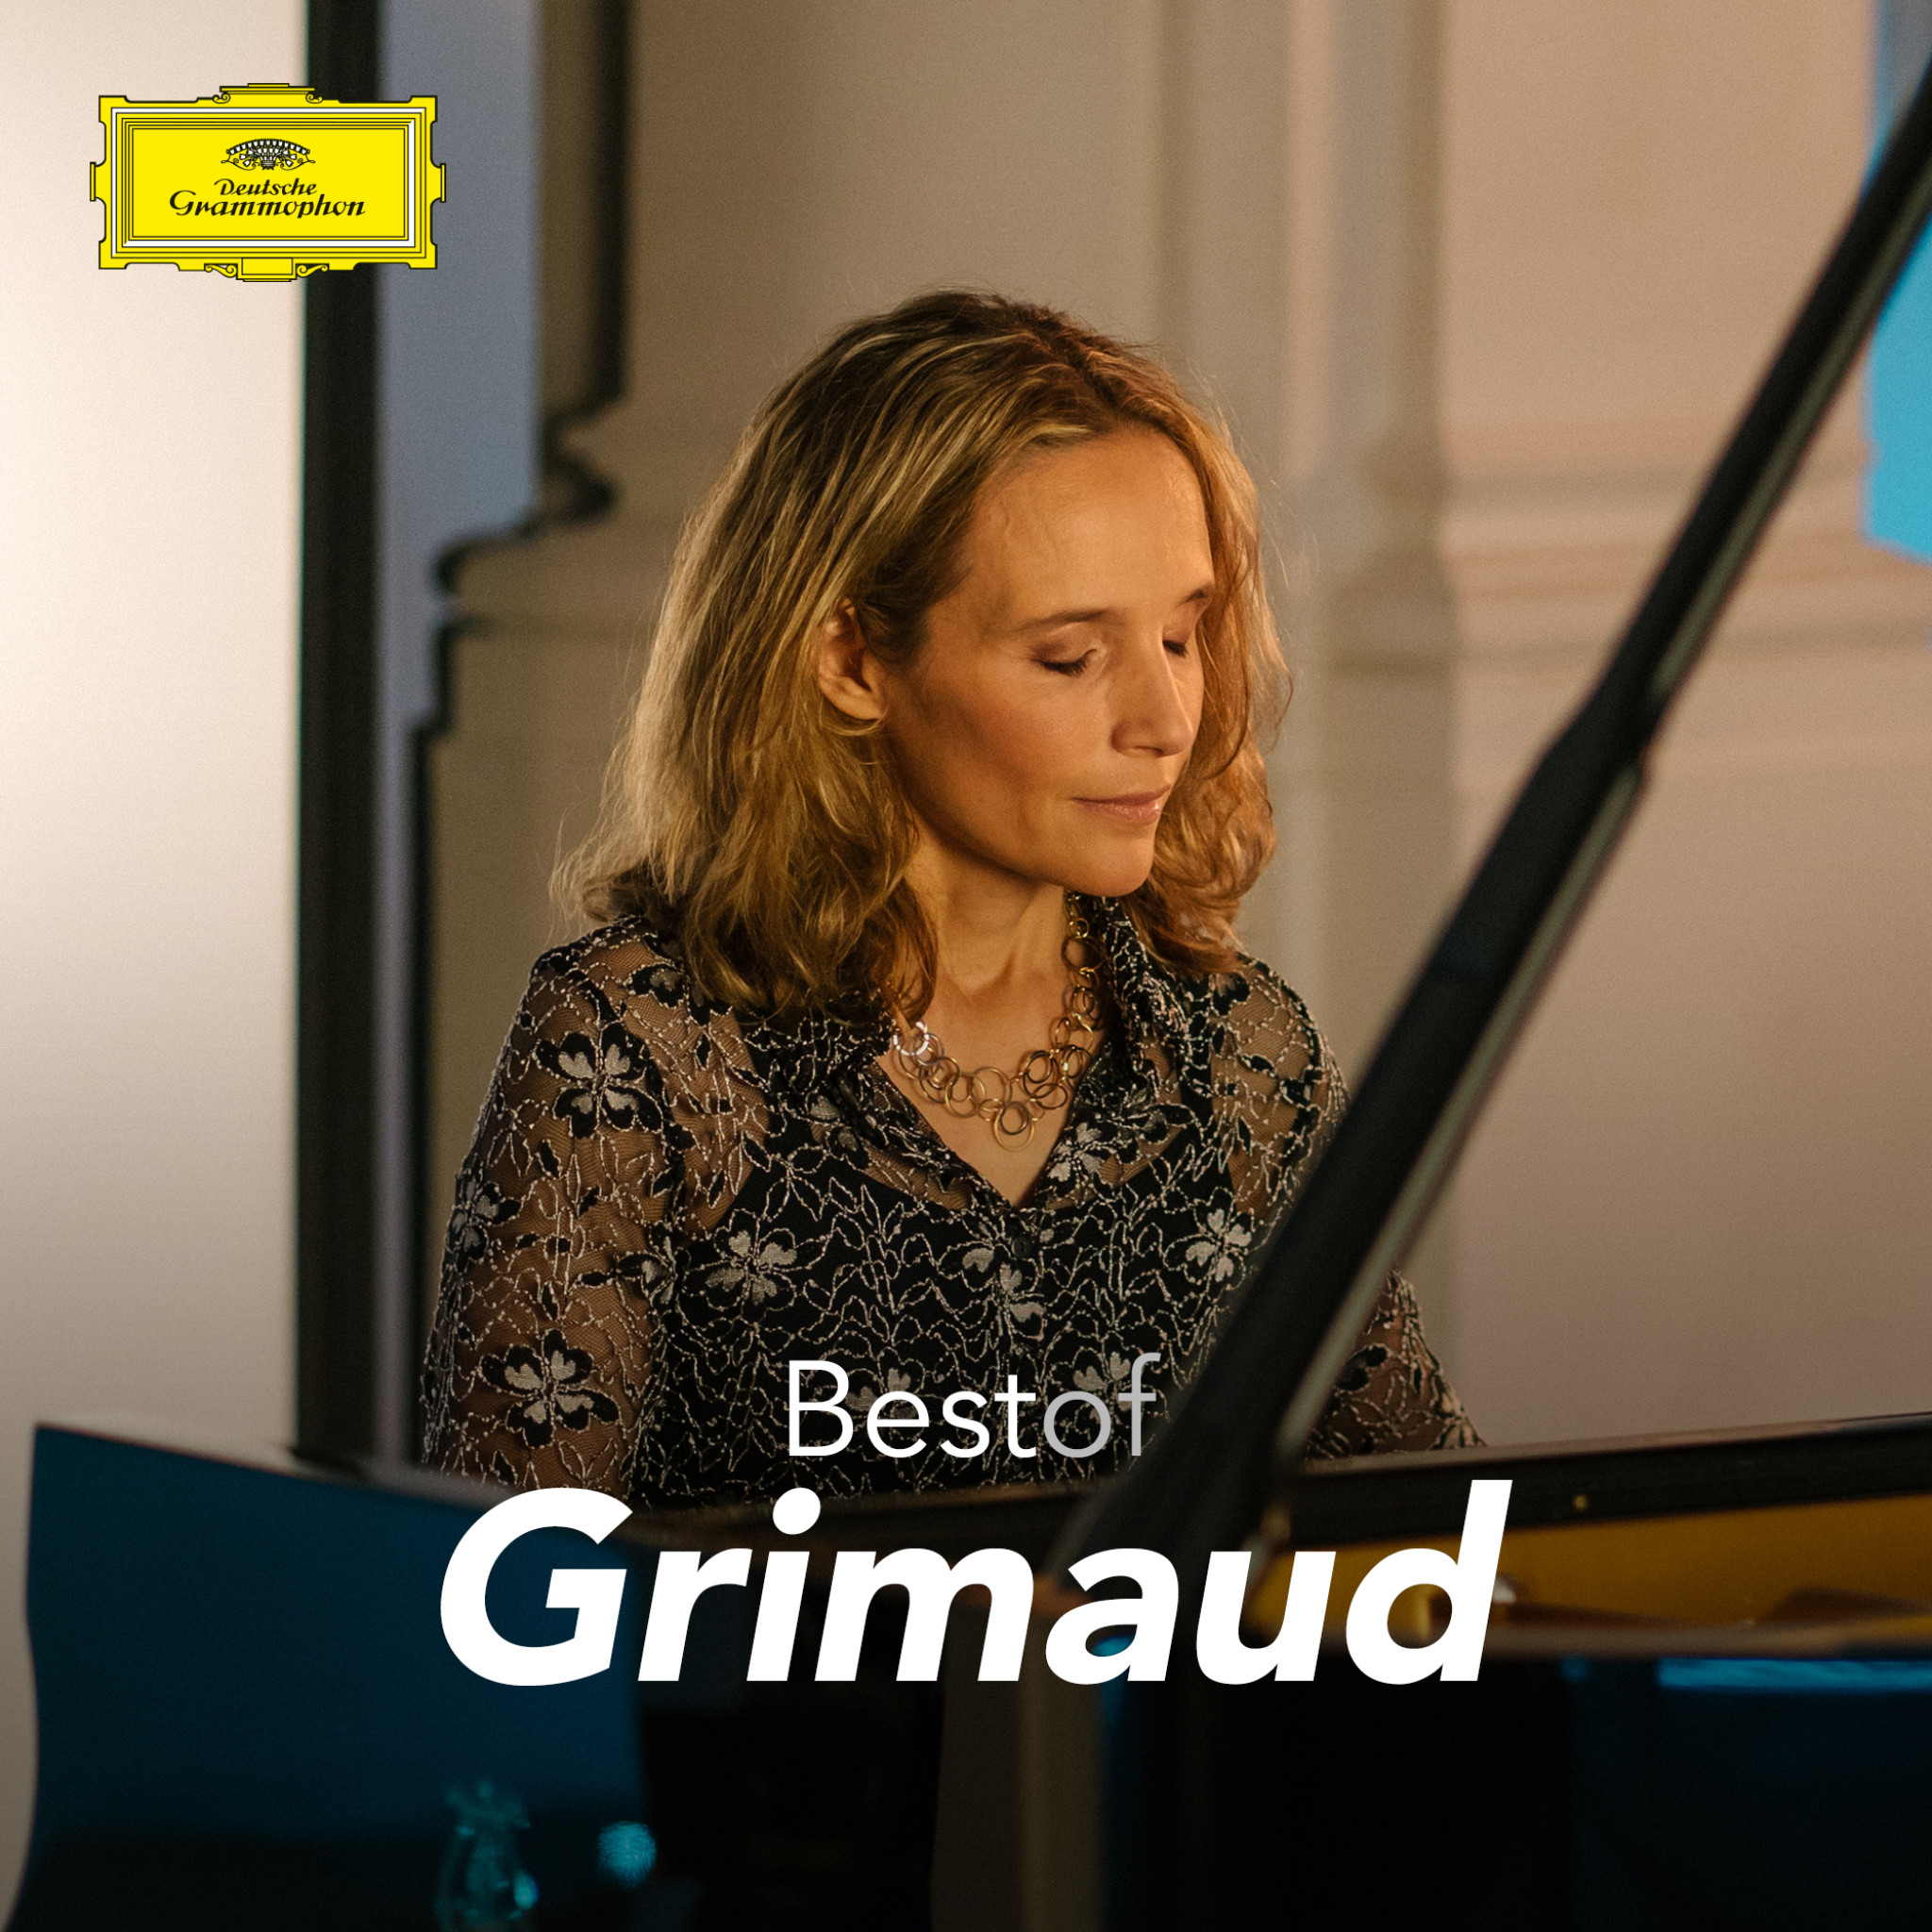 Hélène Grimaud - Best of